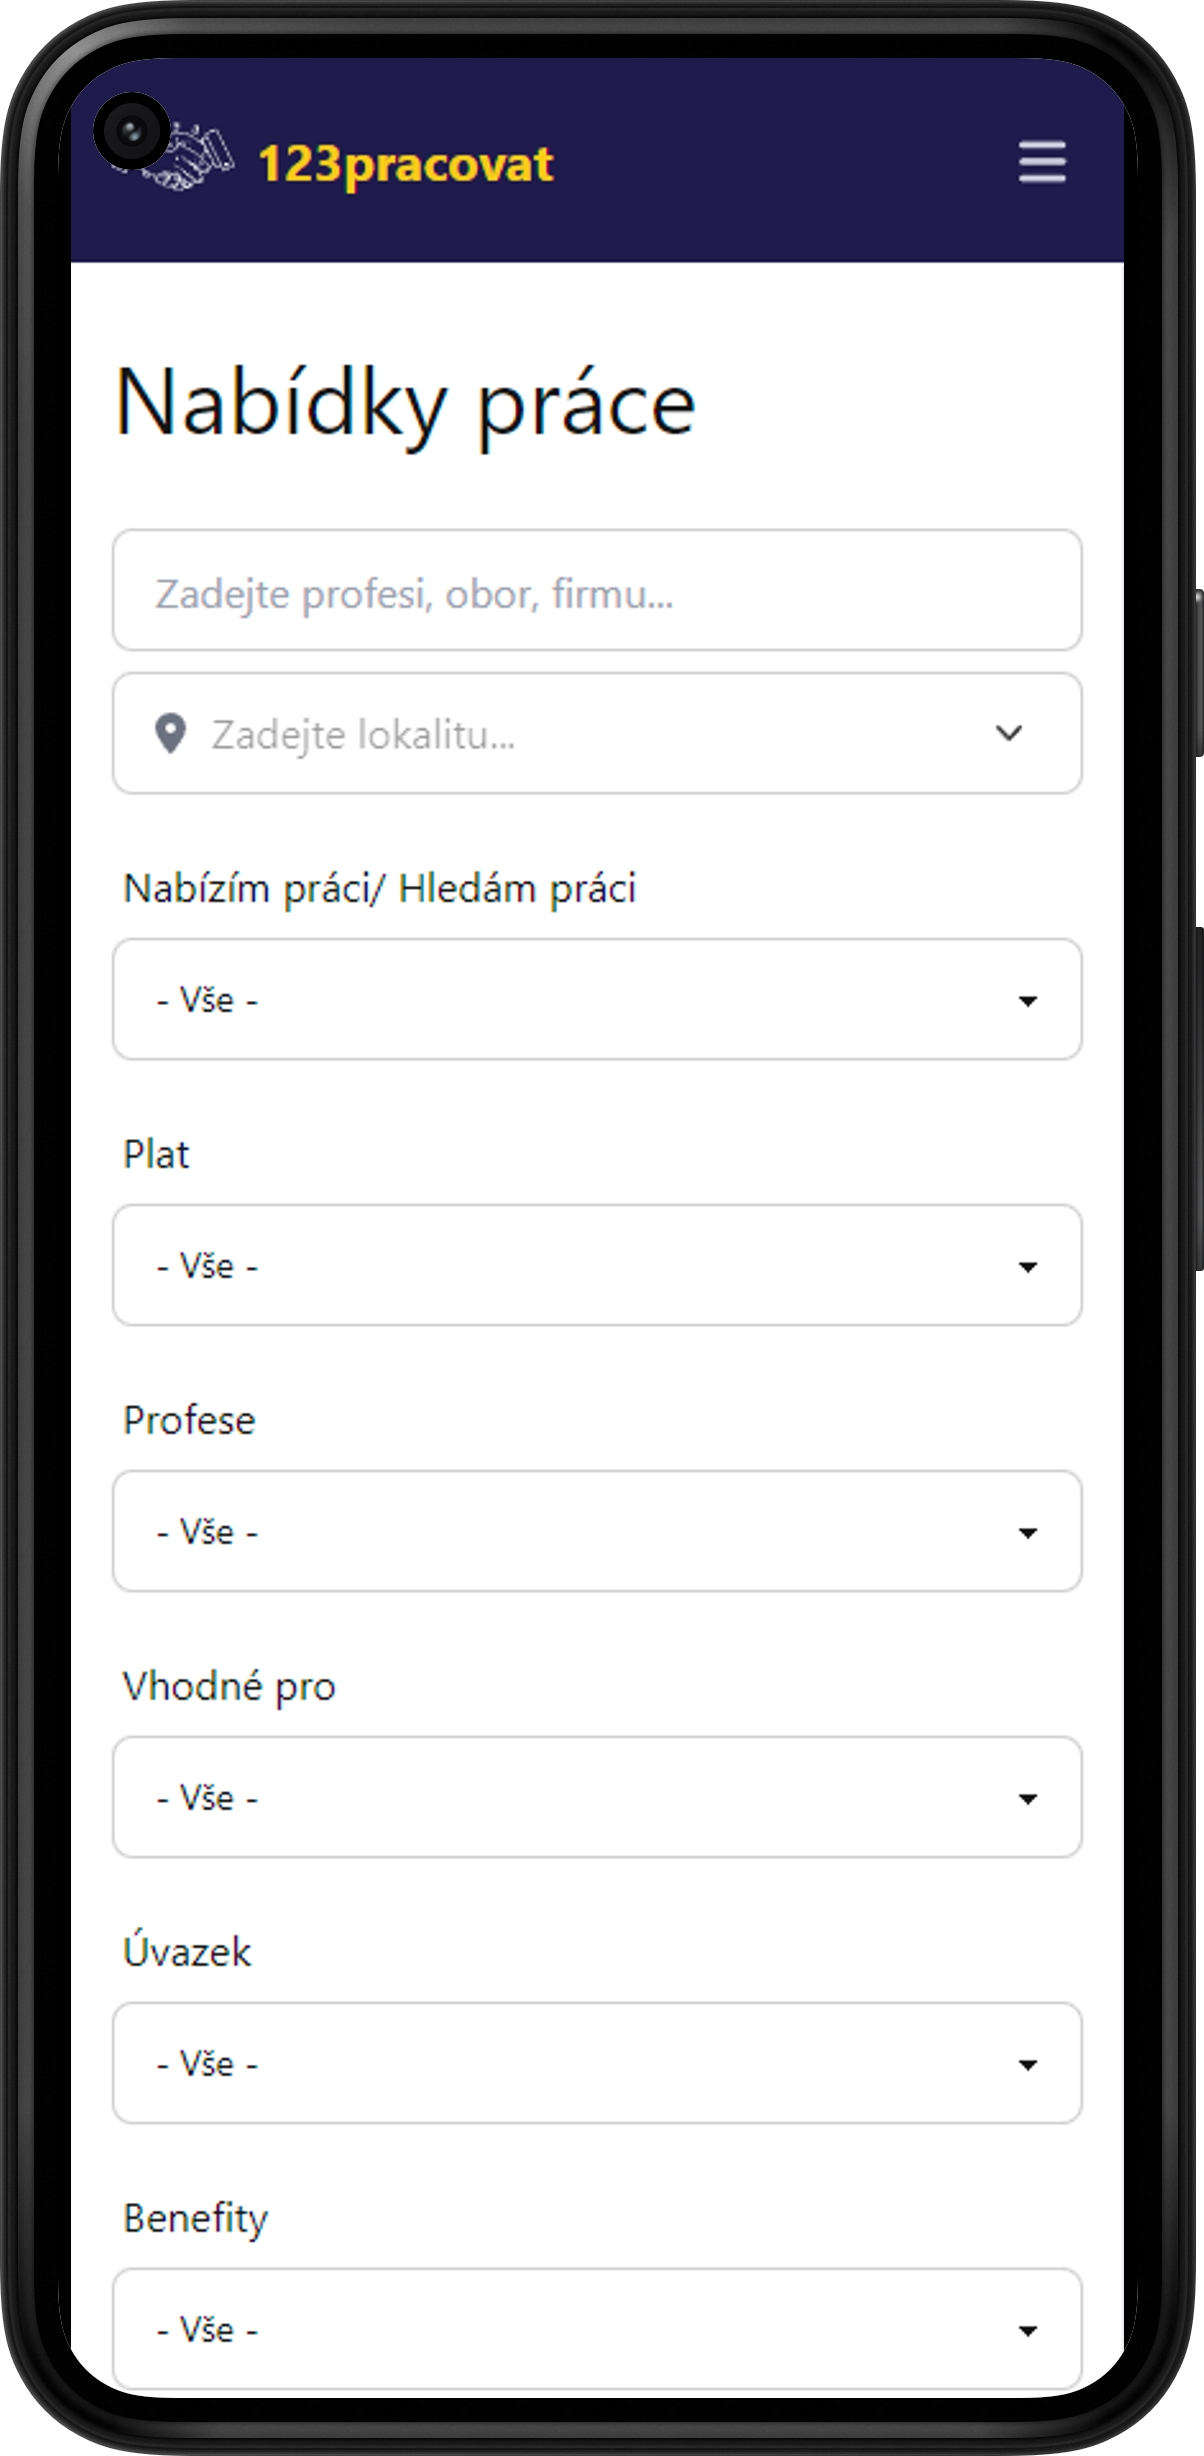 123pracovat.cz - mobilní verze